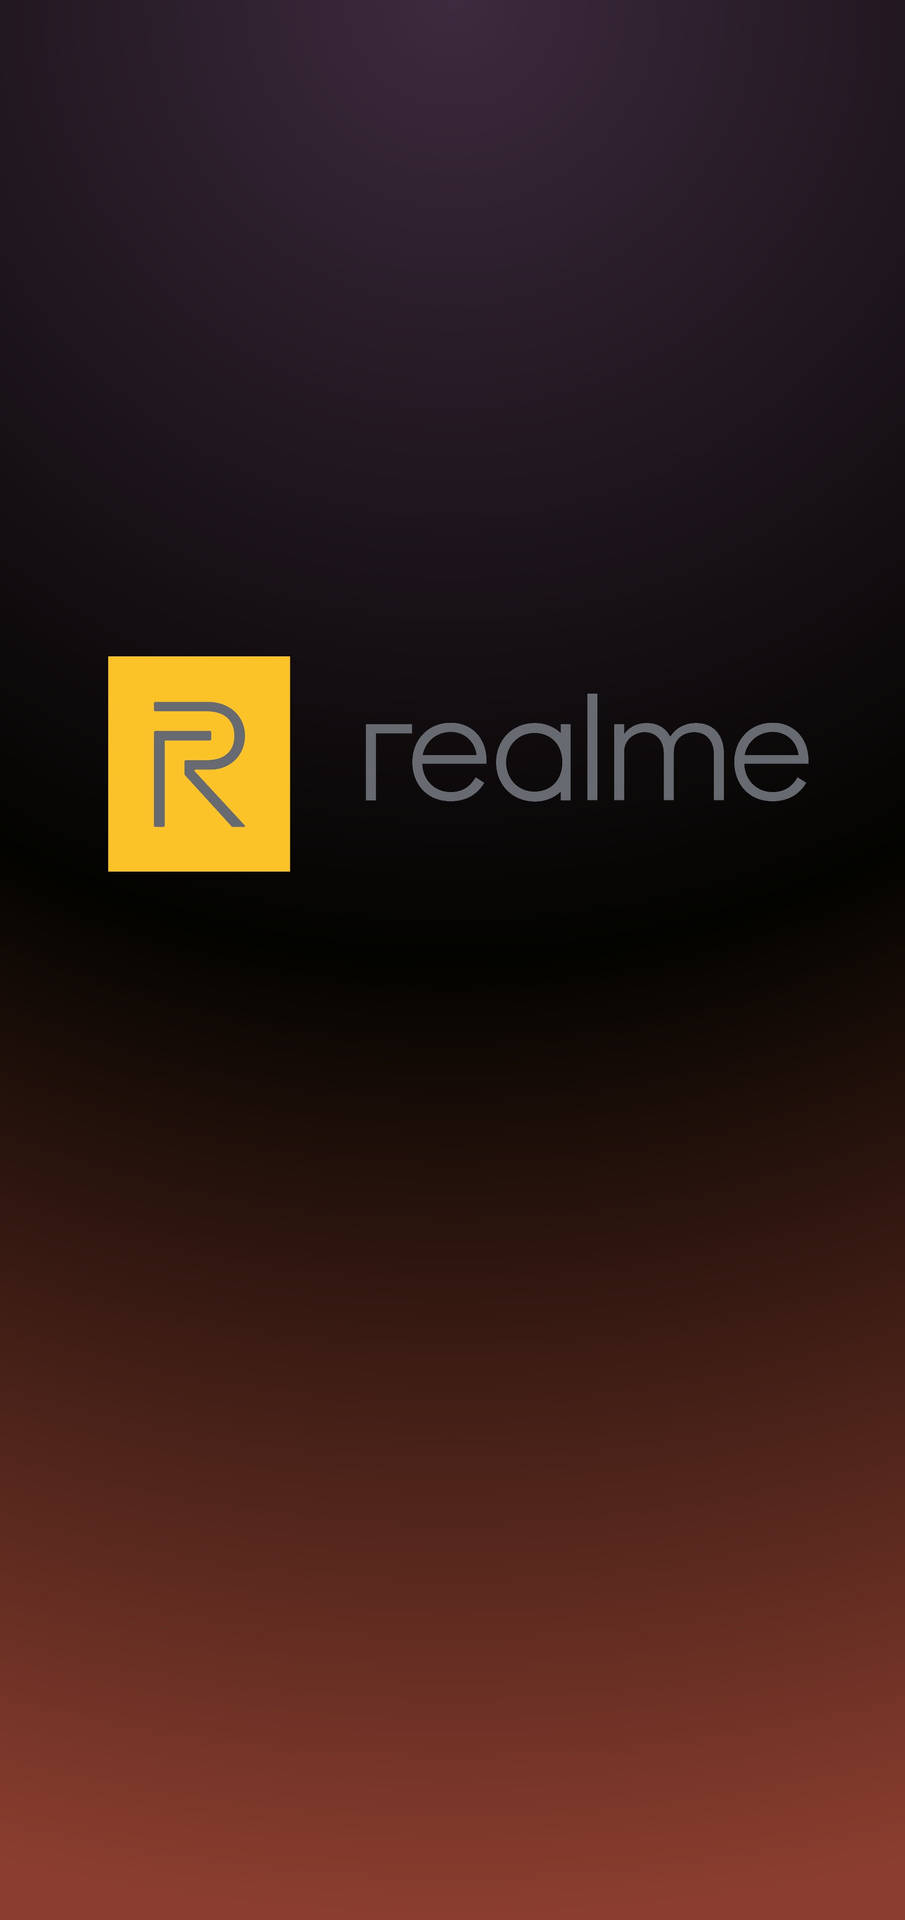 Logotipode Realme En Degradado Negro Marrón. Fondo de pantalla